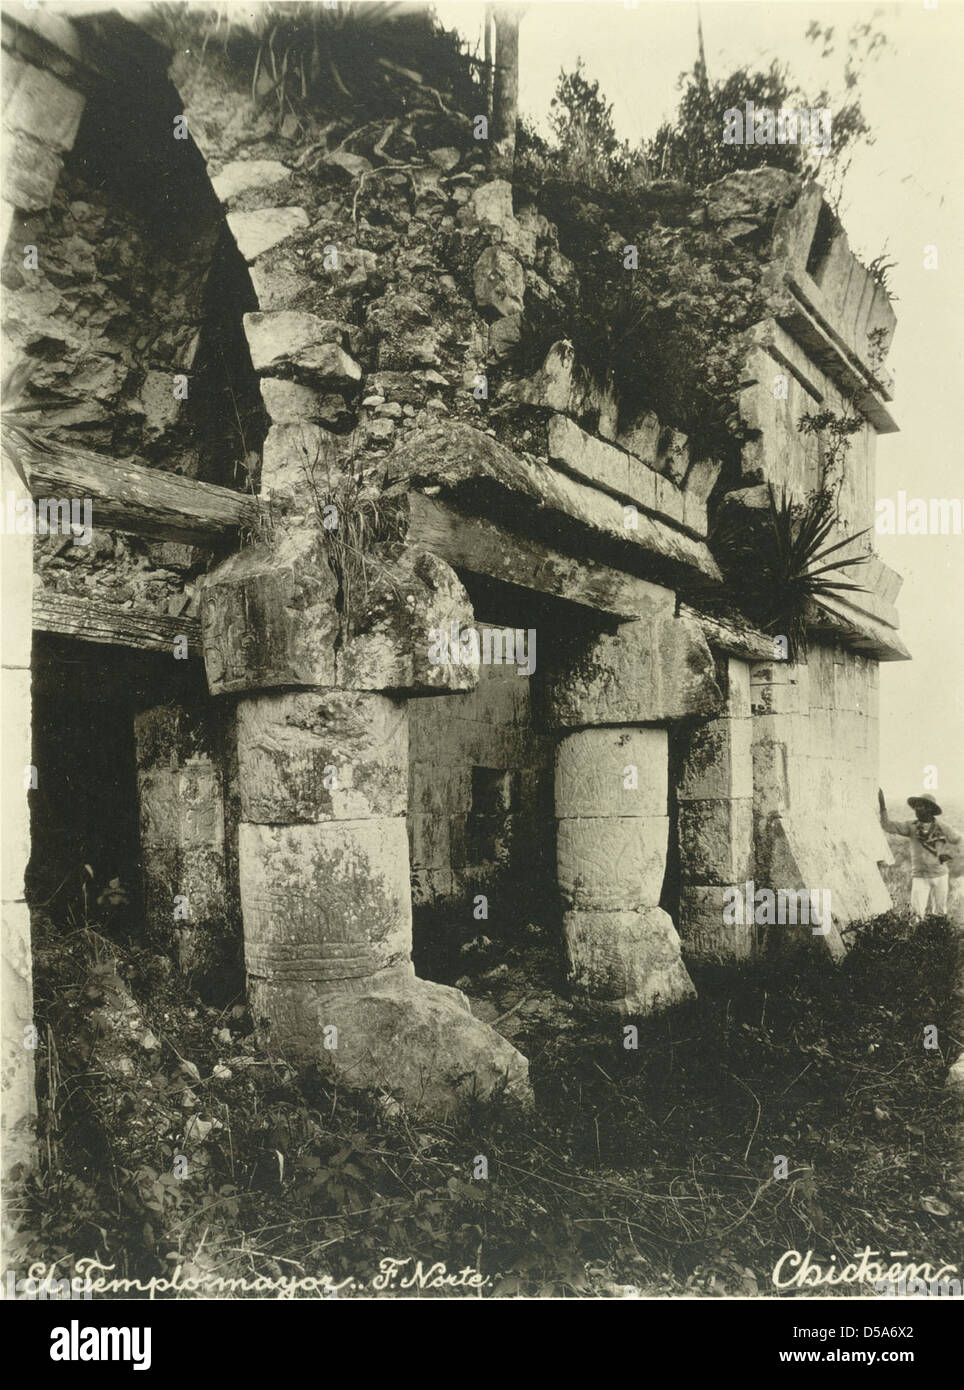 El Castillo de Kukulklan [Templo], la fachada norte, Chichén Itzá Foto de stock